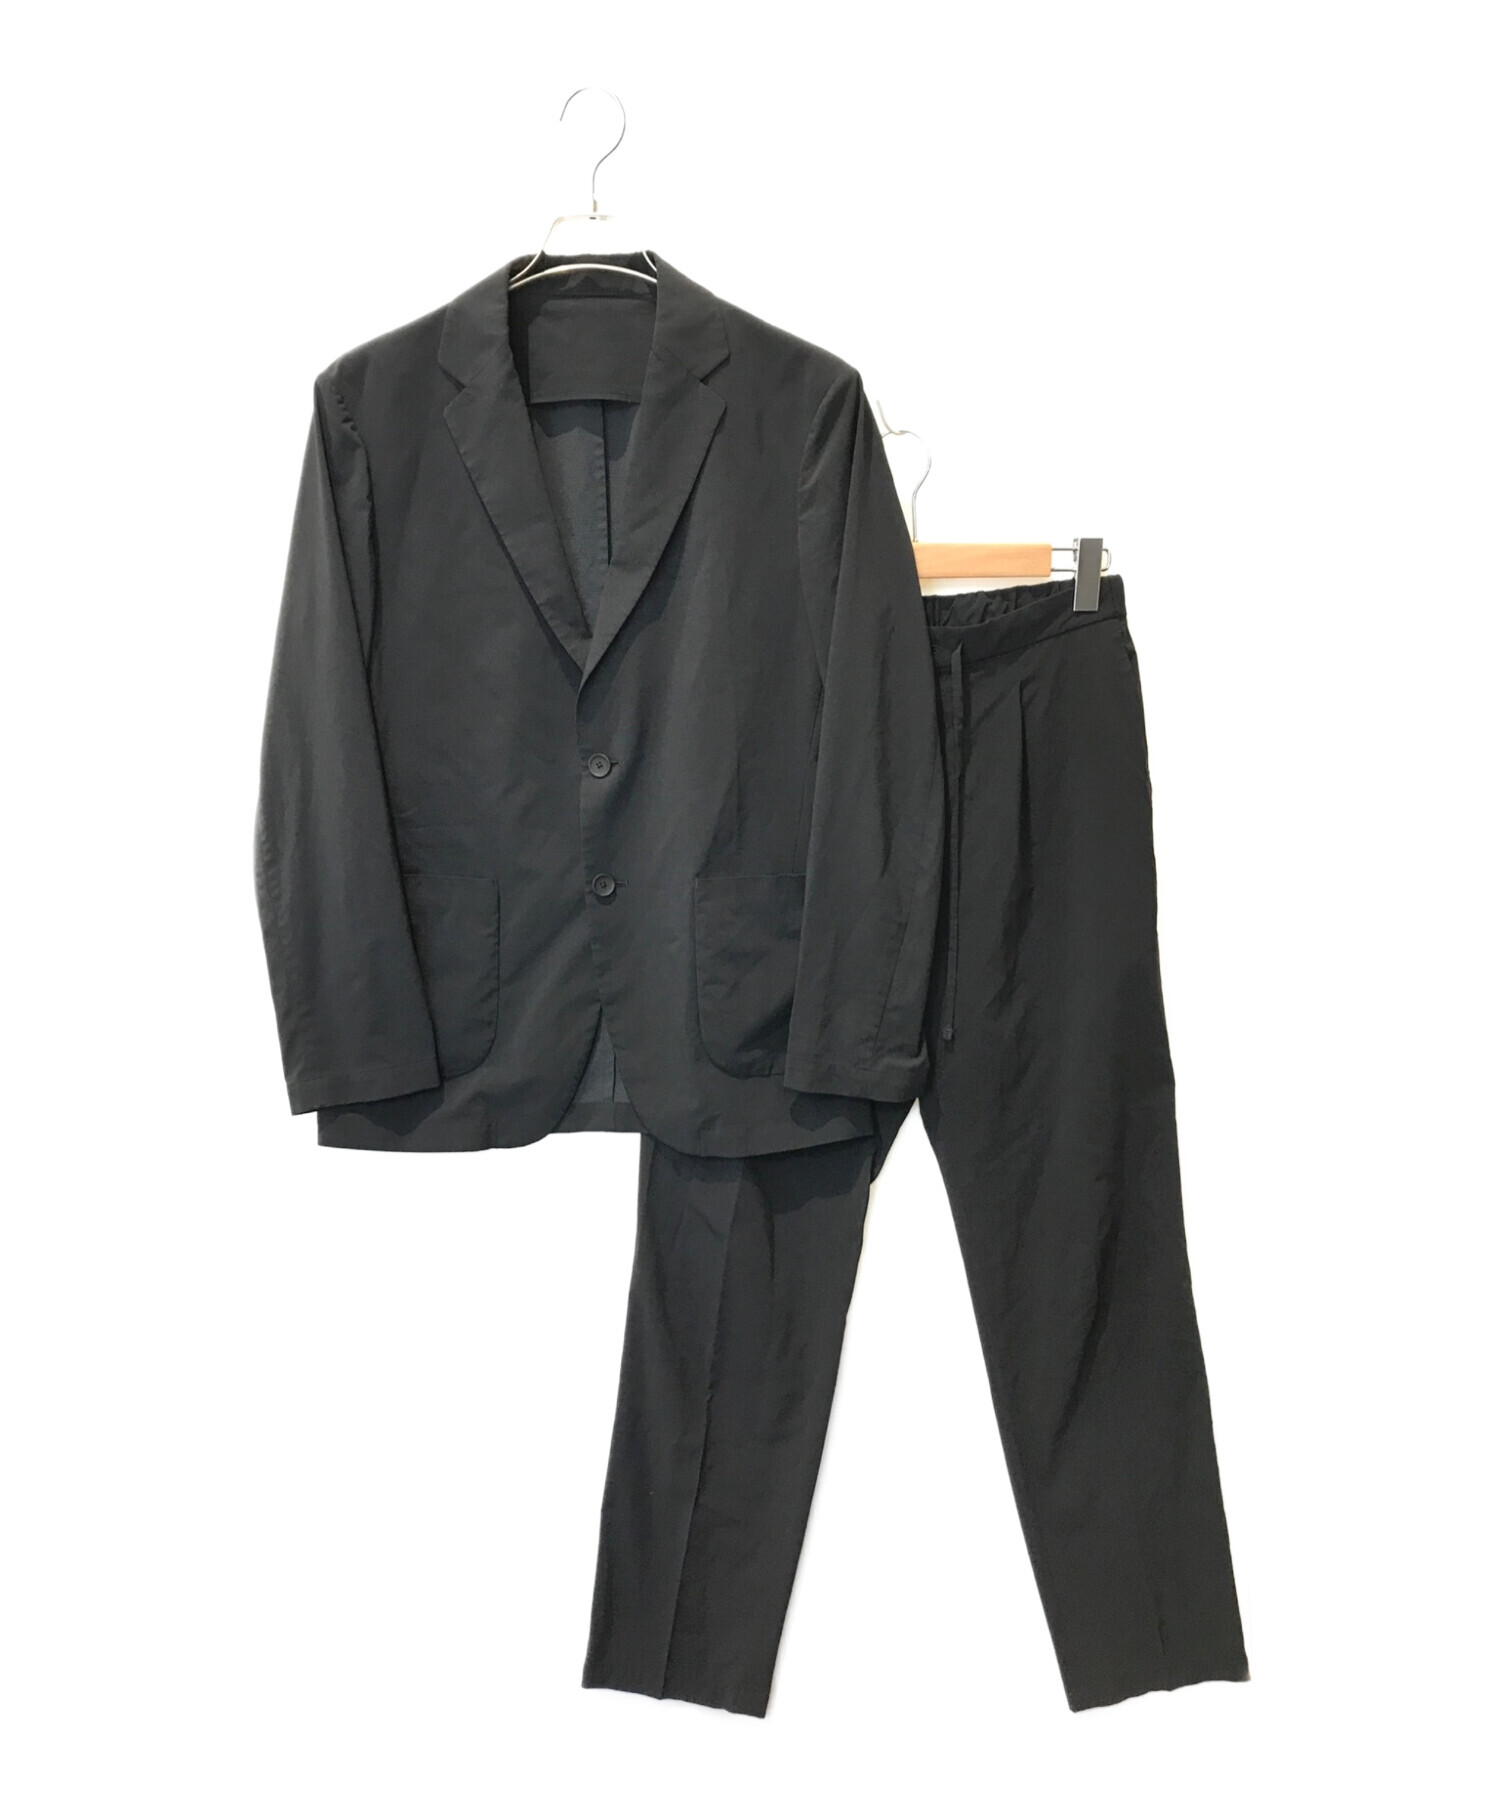 UNITED ARROWS (ユナイテッドアローズ) ナイロンタフタセットアップスーツ ブラック サイズ:M